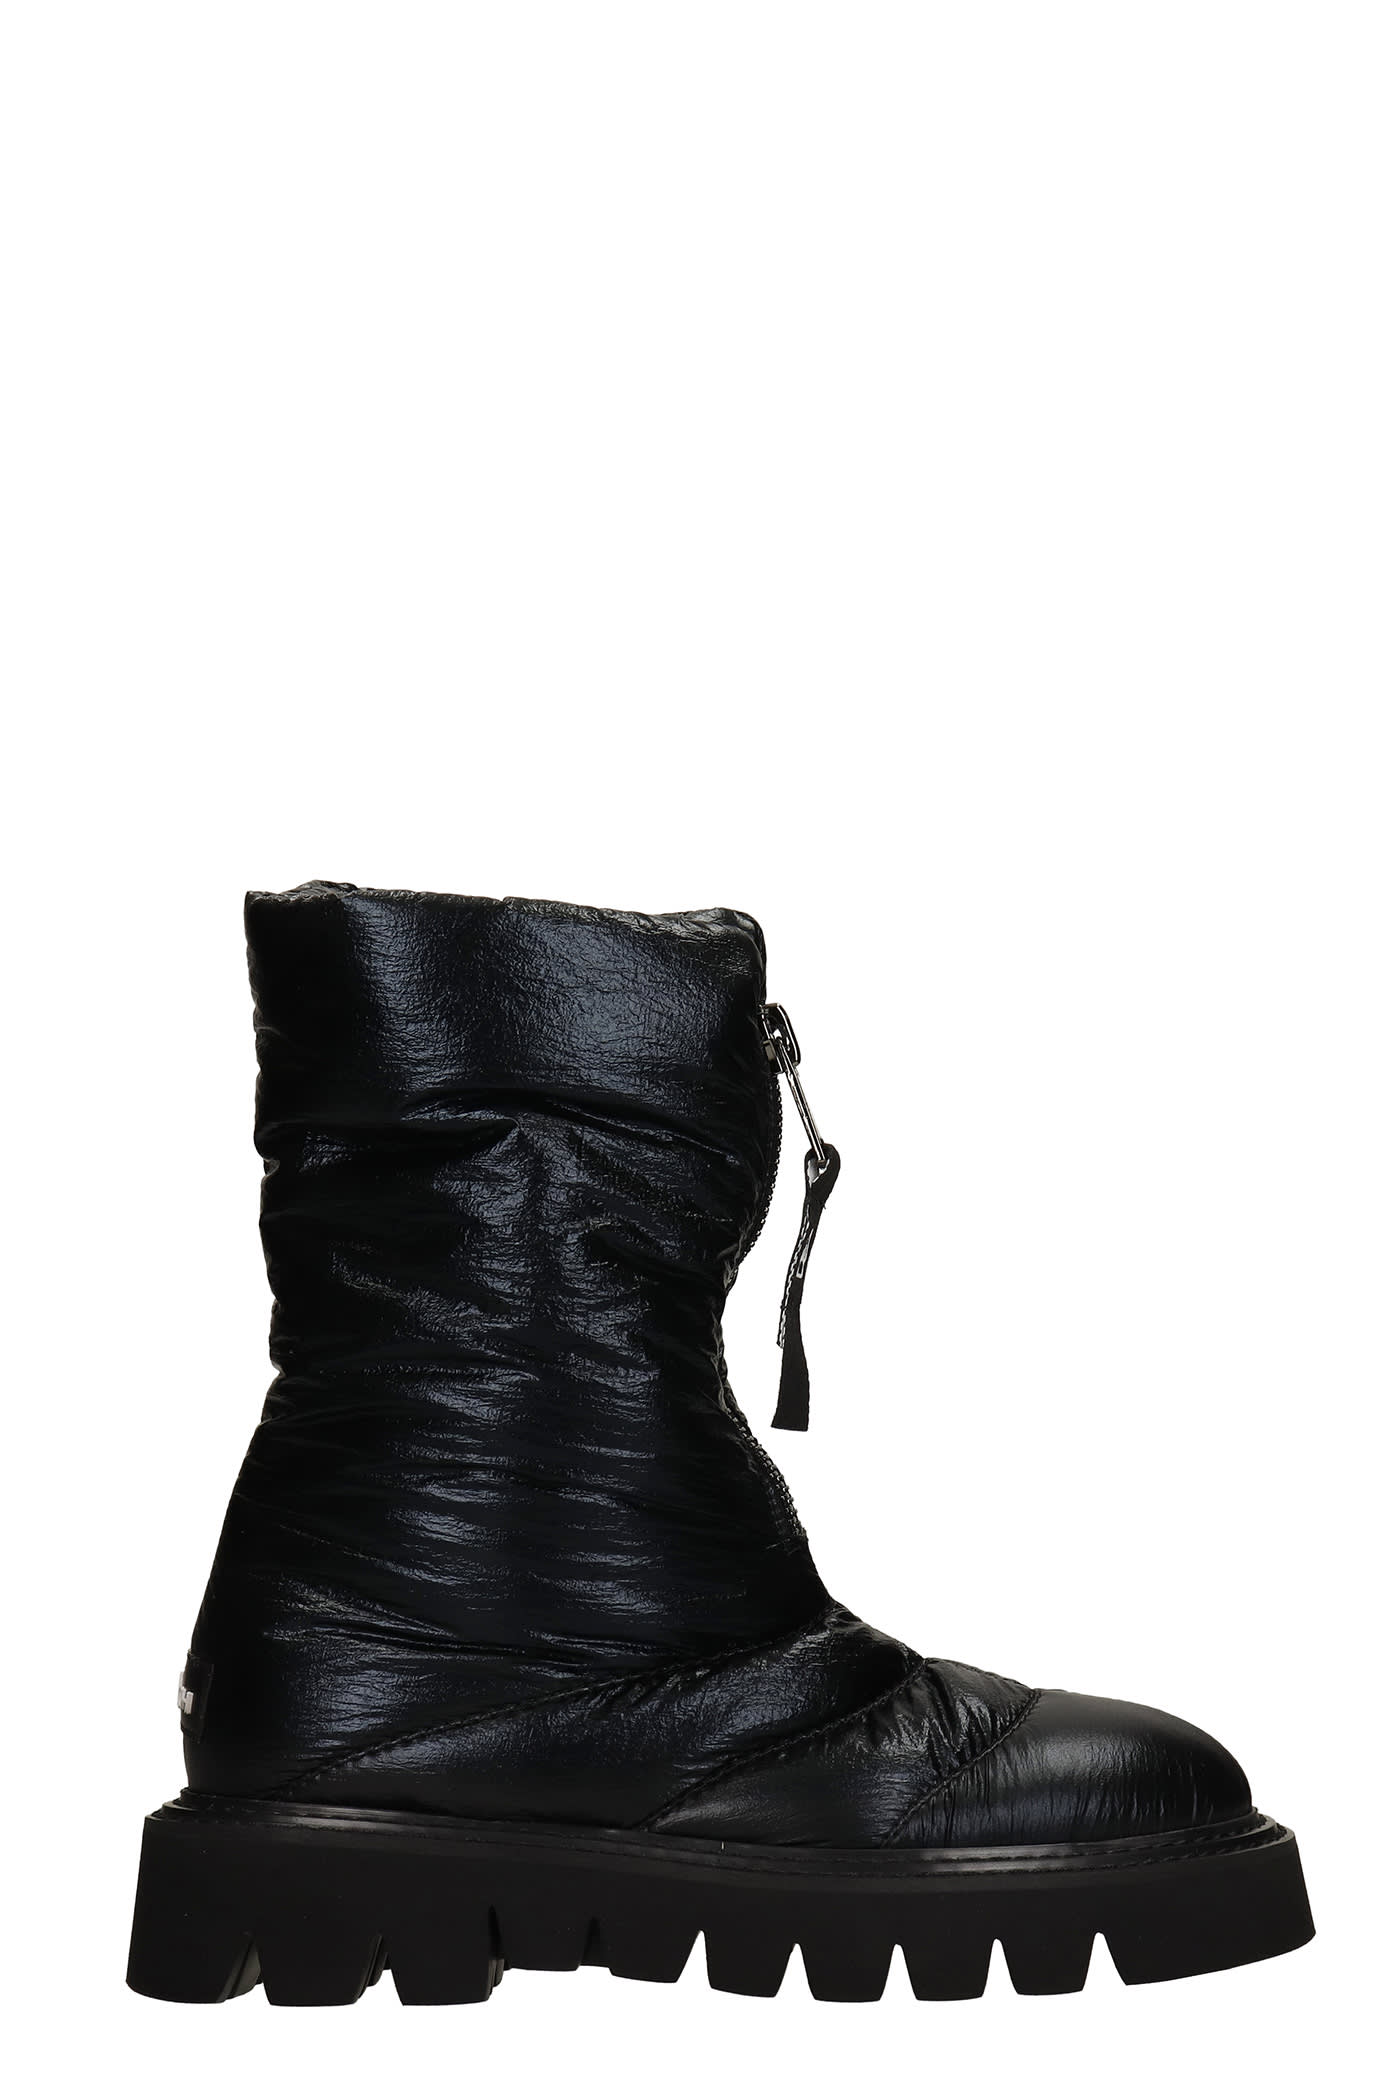 Elena Iachi Combat Boots In Black Synthetic Fibers